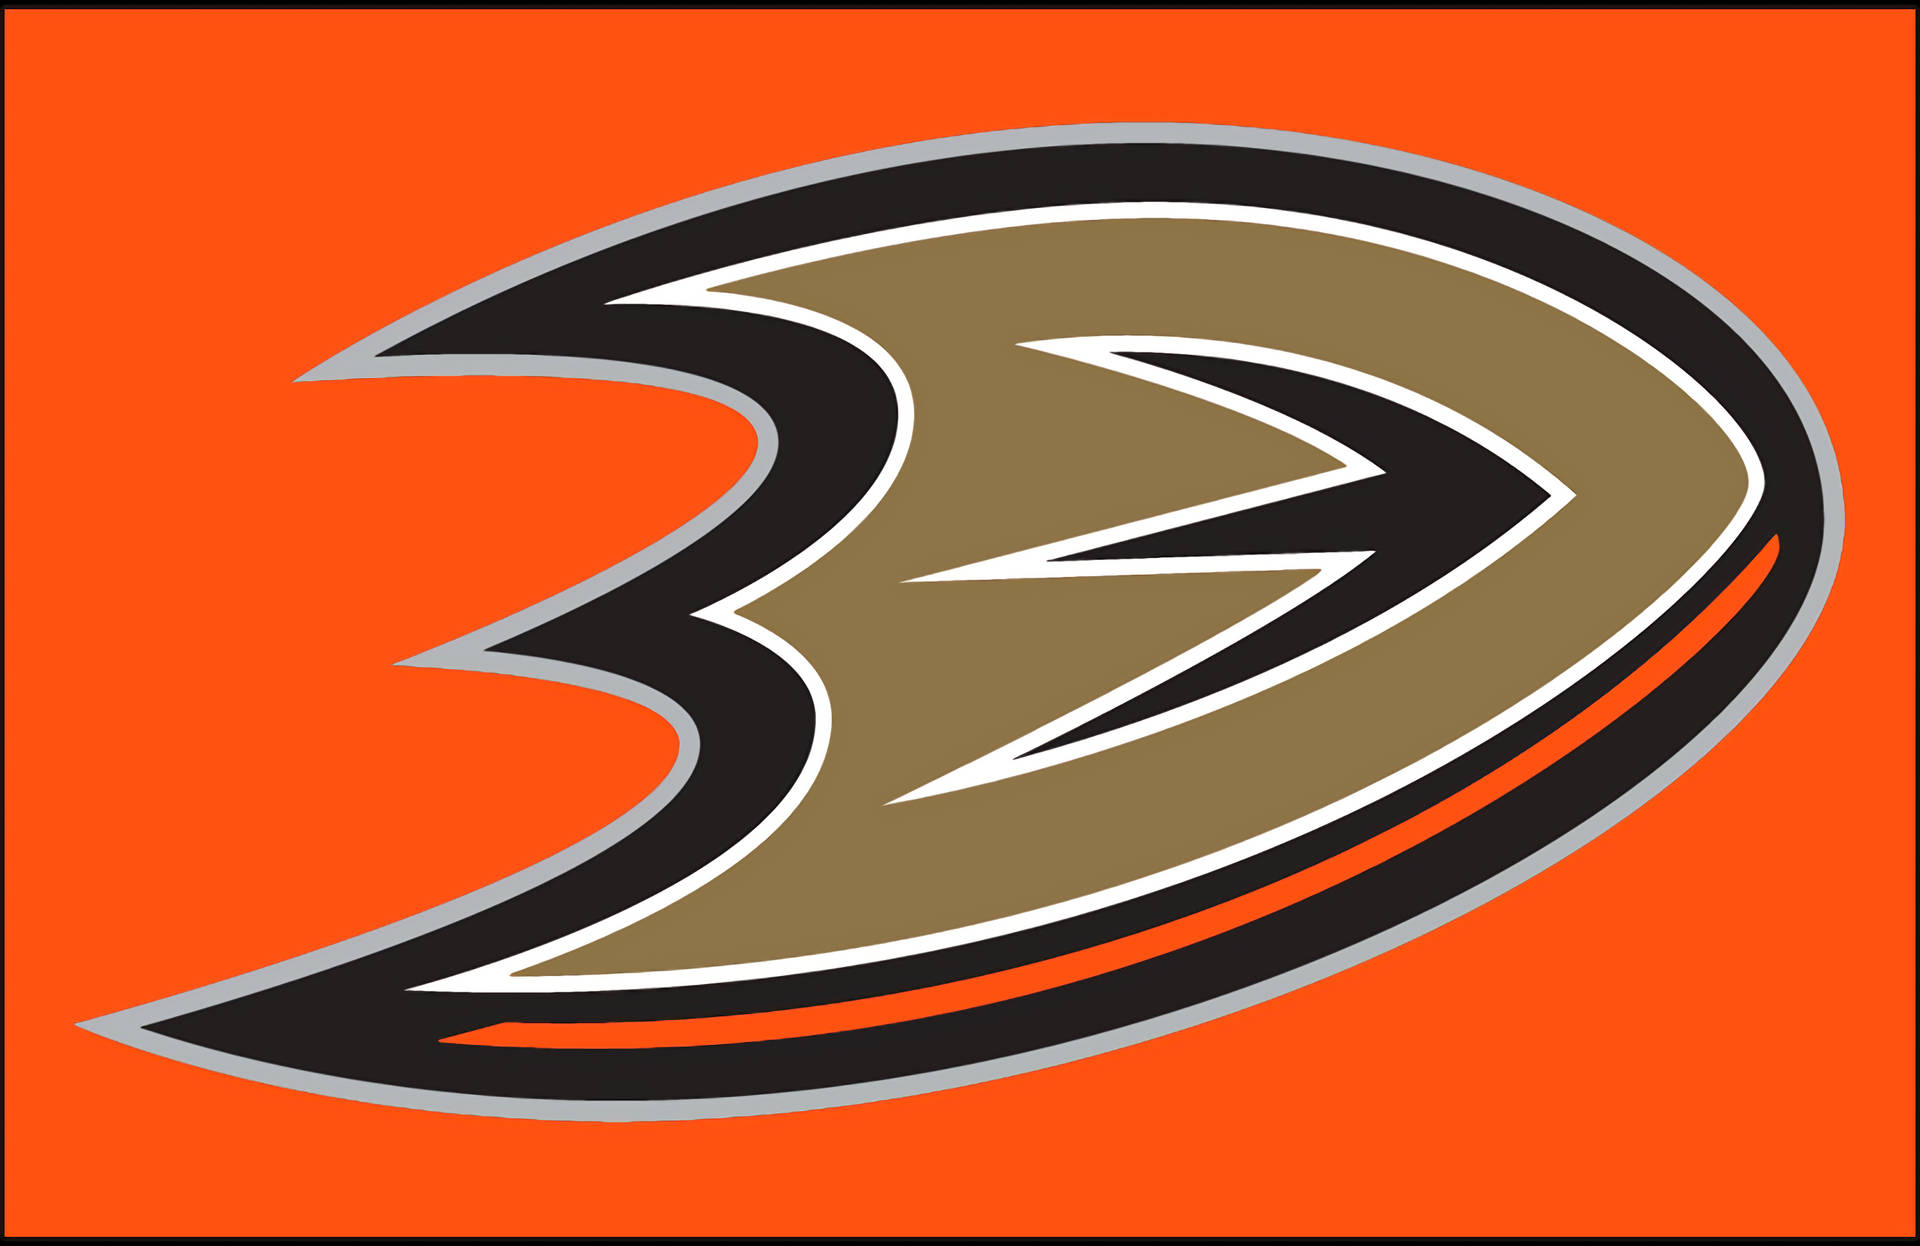 2013 Anaheim Ducks Orange Background